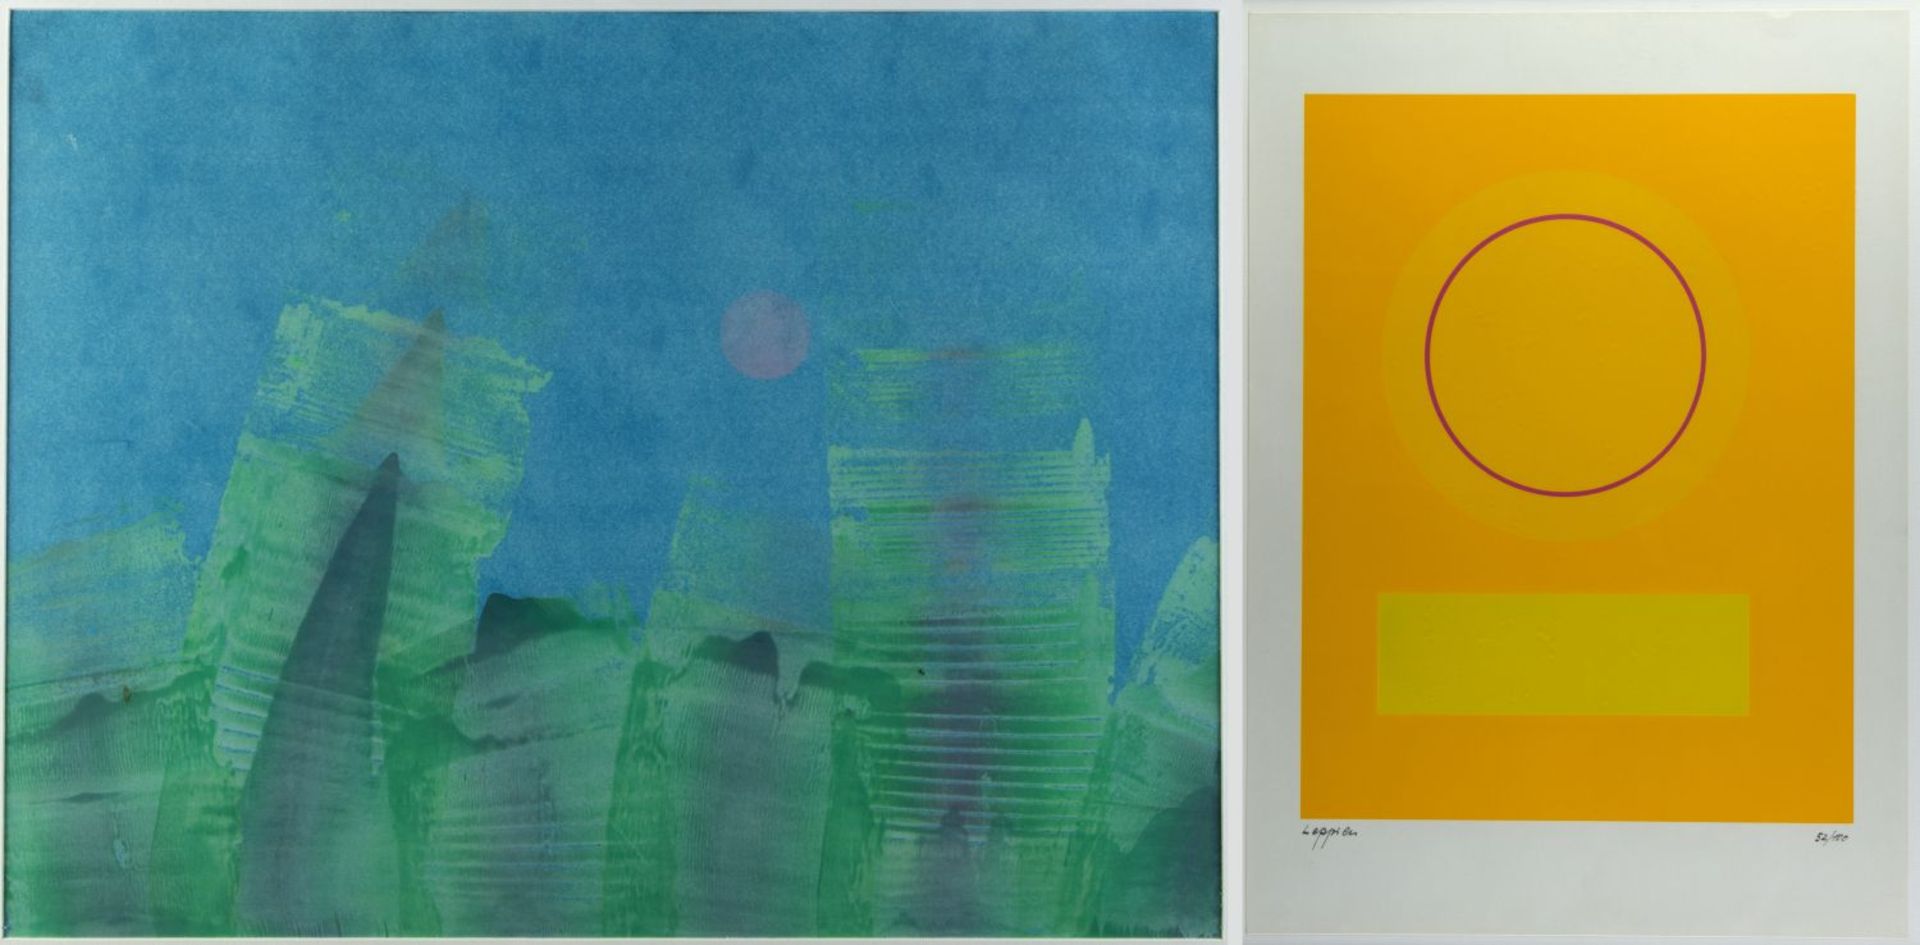 Leppien, Jean u.a. Komposition mit einem Kreis. Variation blau/grün rote Sonne u.a. 2 Farbse - Bild 2 aus 7